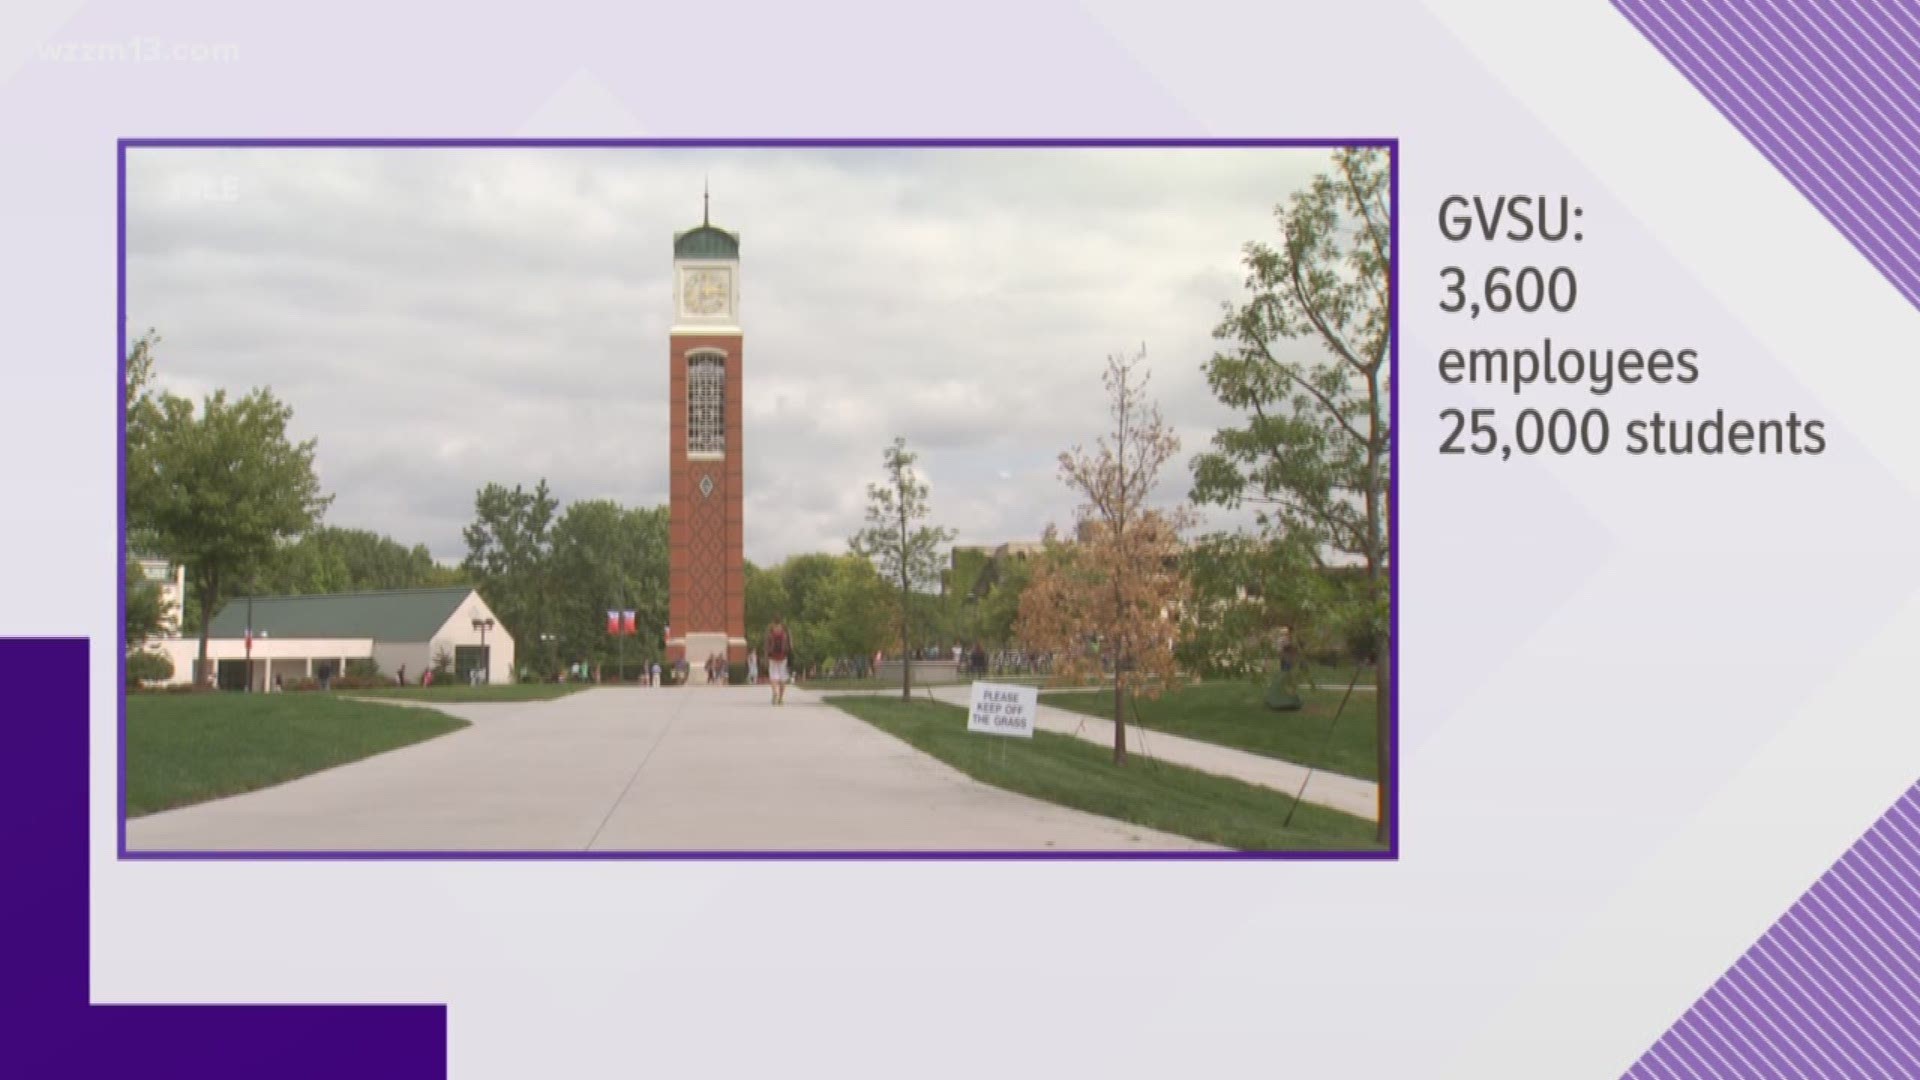 GVSU economic impact in West Michigan